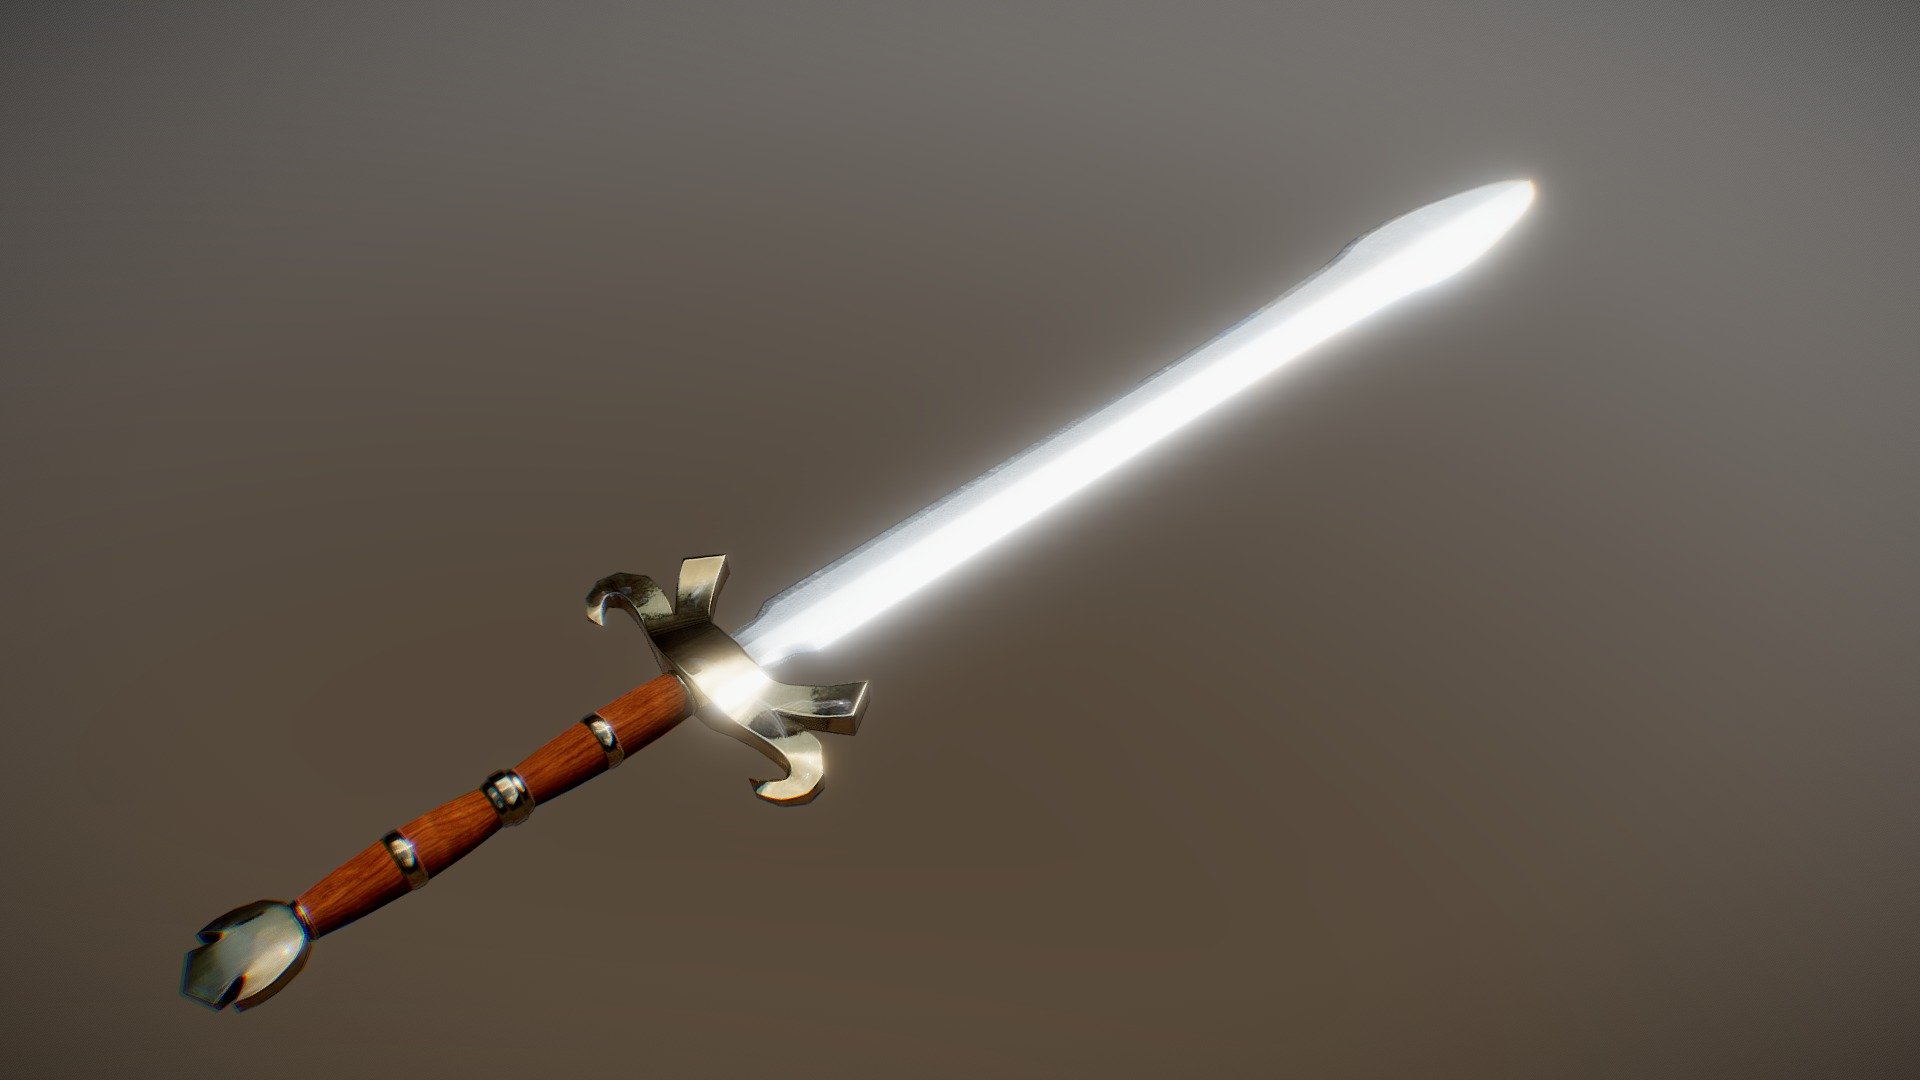 Warlord Sword